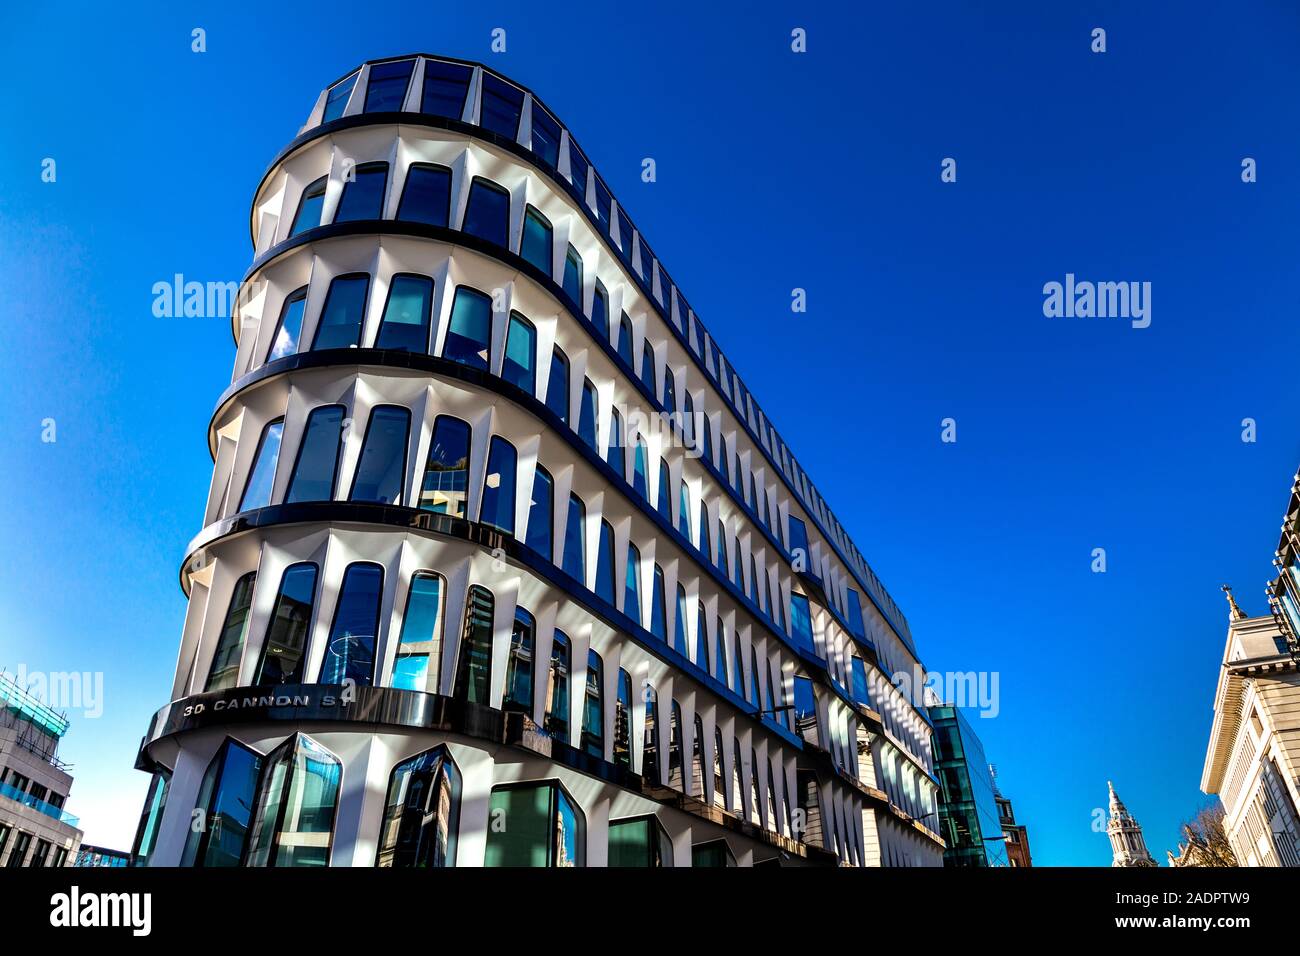 Immeuble de bureaux contemporain 30 Cannon Street, London, UK Banque D'Images